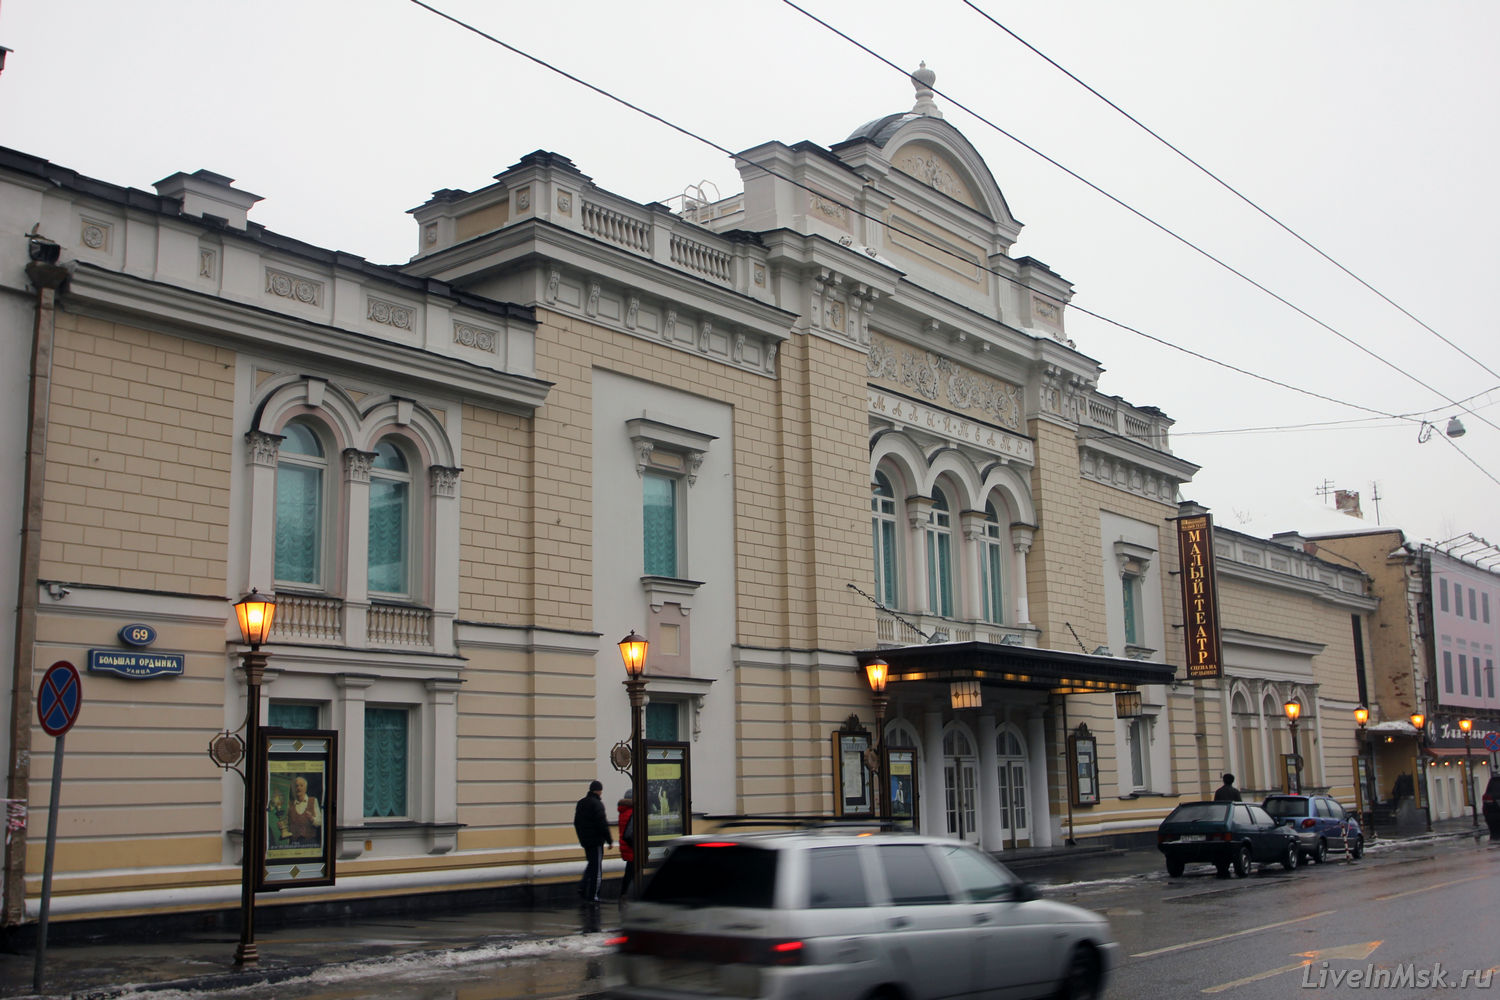 Малый театр на Ордынке, фото 2016 года